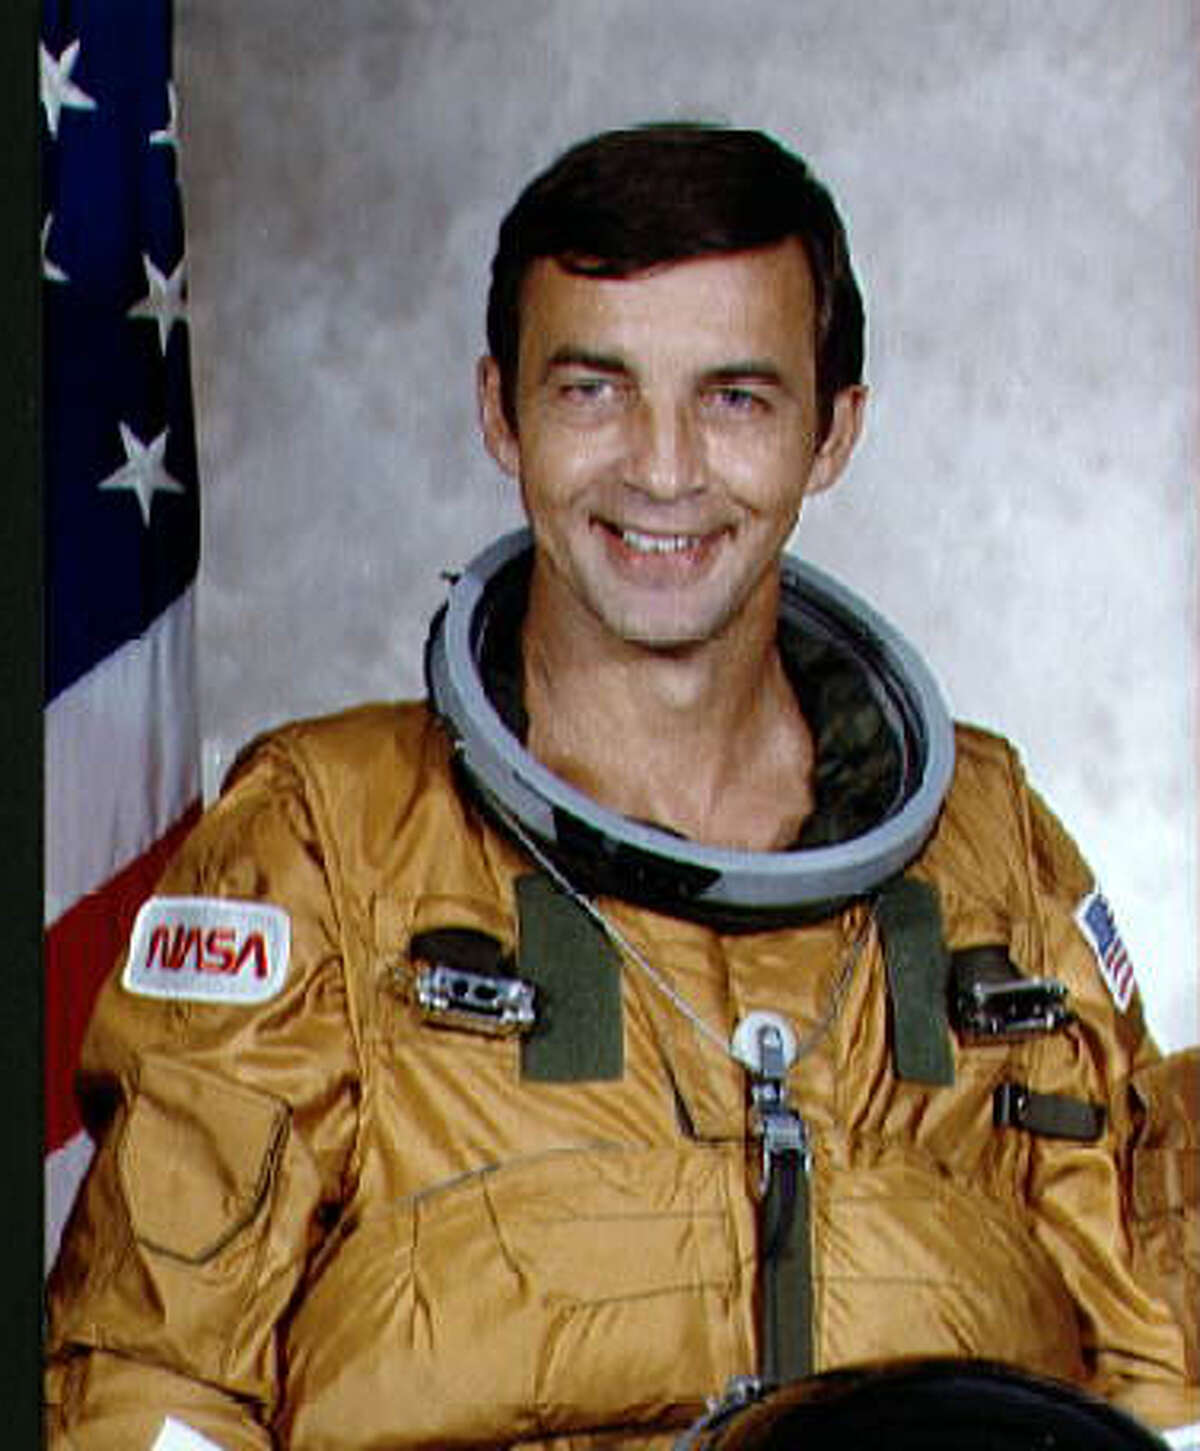 Space Shuttle astronaut Don Peterson